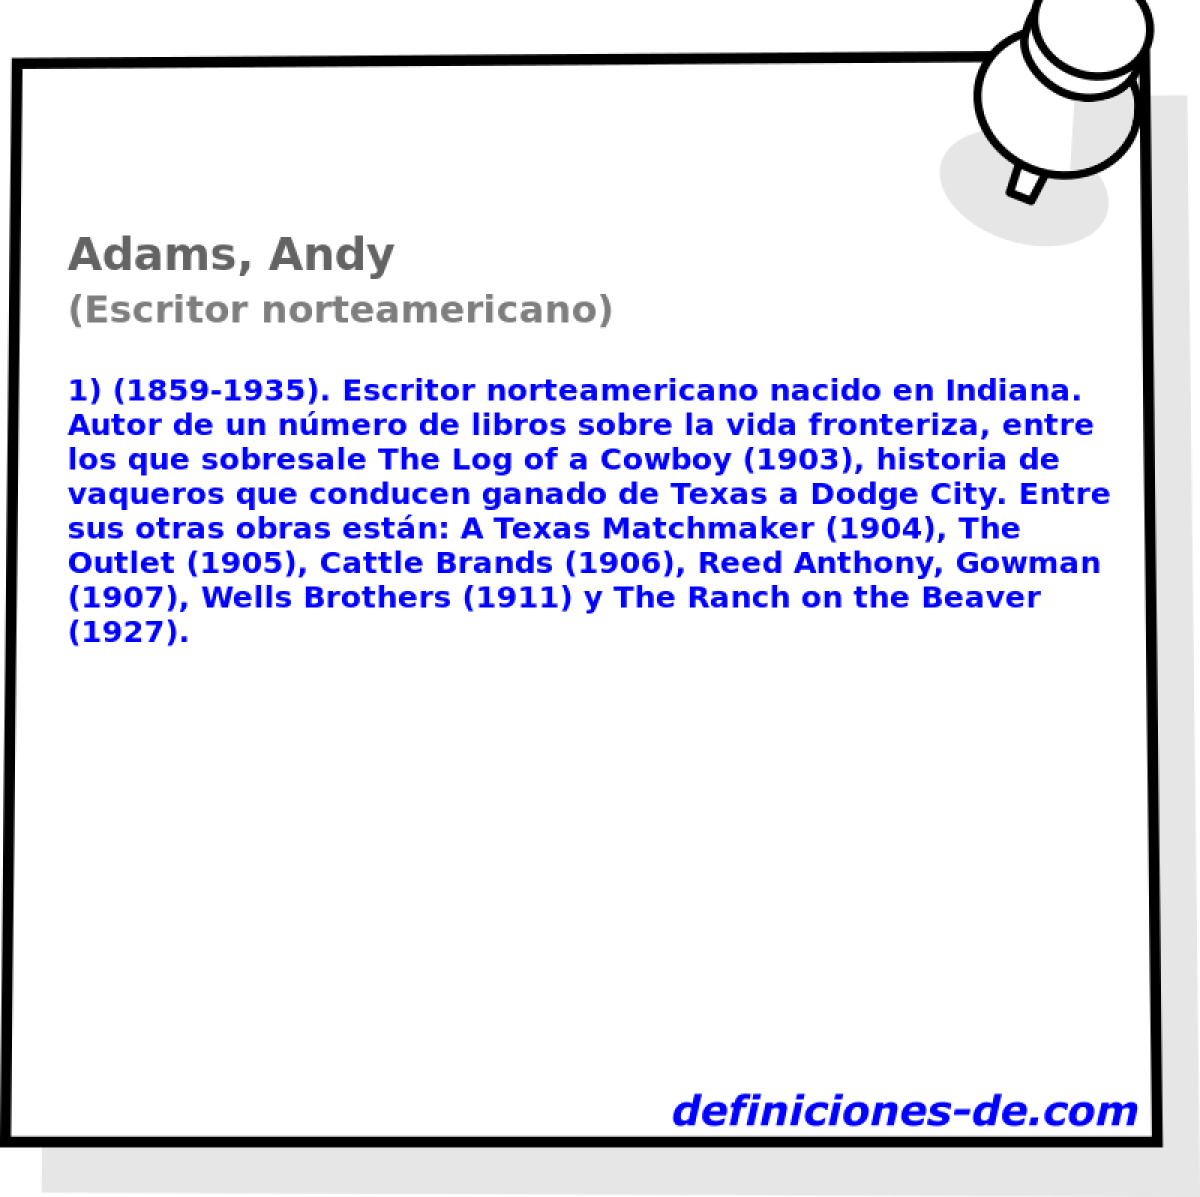 Adams, Andy (Escritor norteamericano)